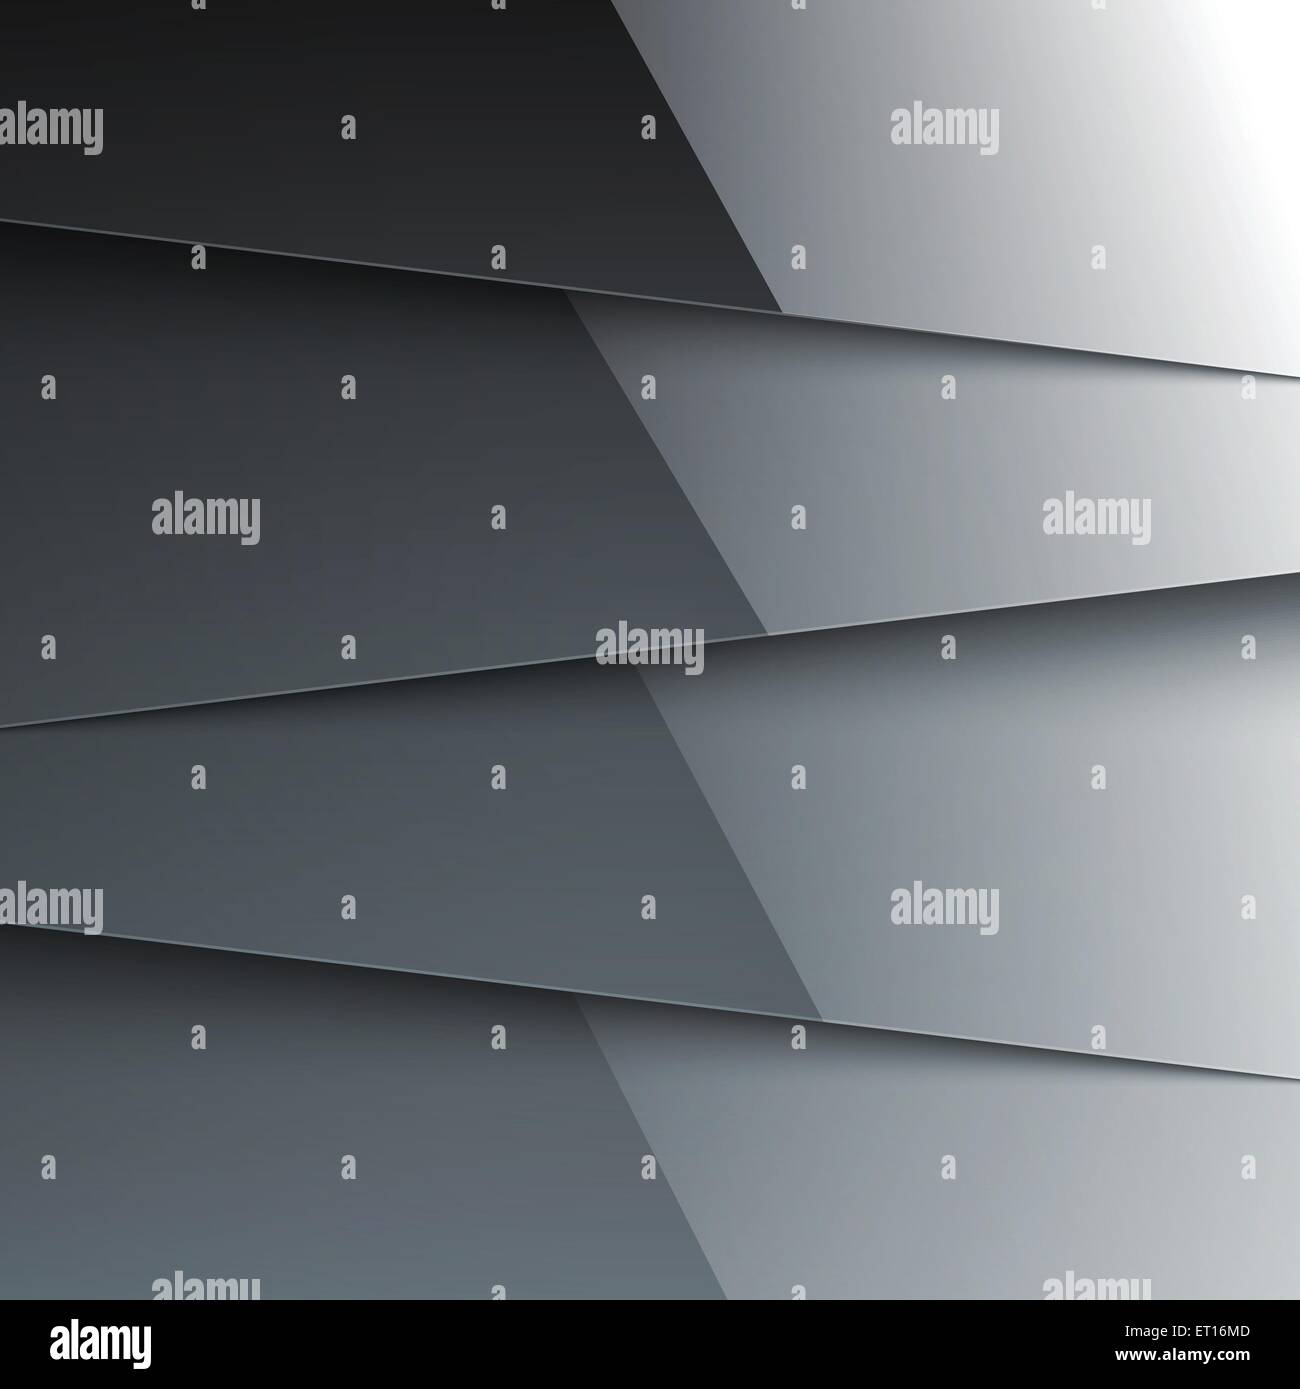 Couches métallique brillant gris foncé abstract background. 10 illustration vecteur EPS RVB Illustration de Vecteur